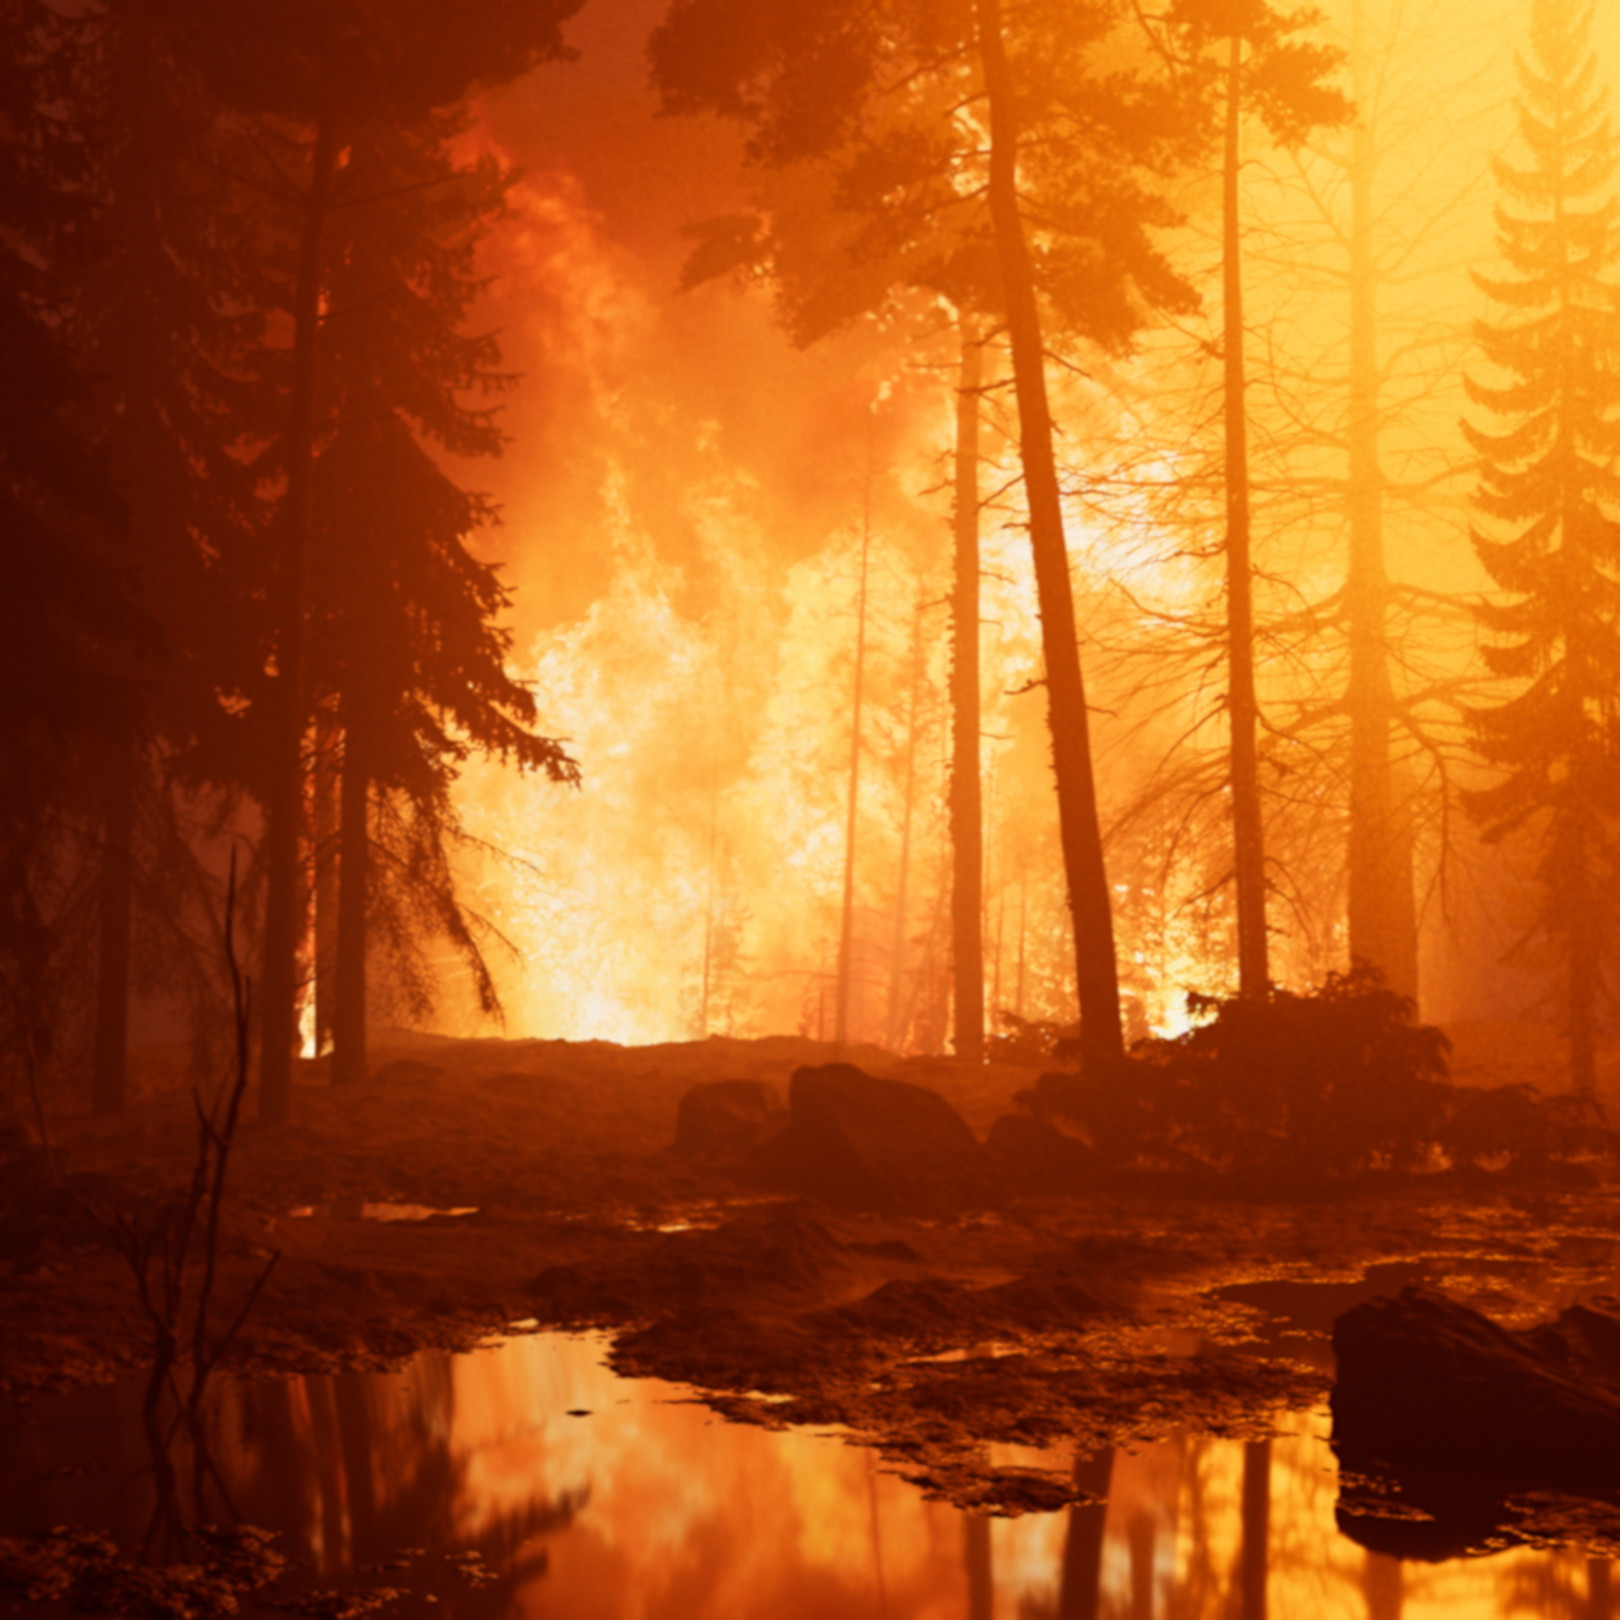 David CLAERBOUT – Futótűz (merengés a tűzön) / Wildfire (meditation on fire) 2019-2020 © David CLAERBOUT